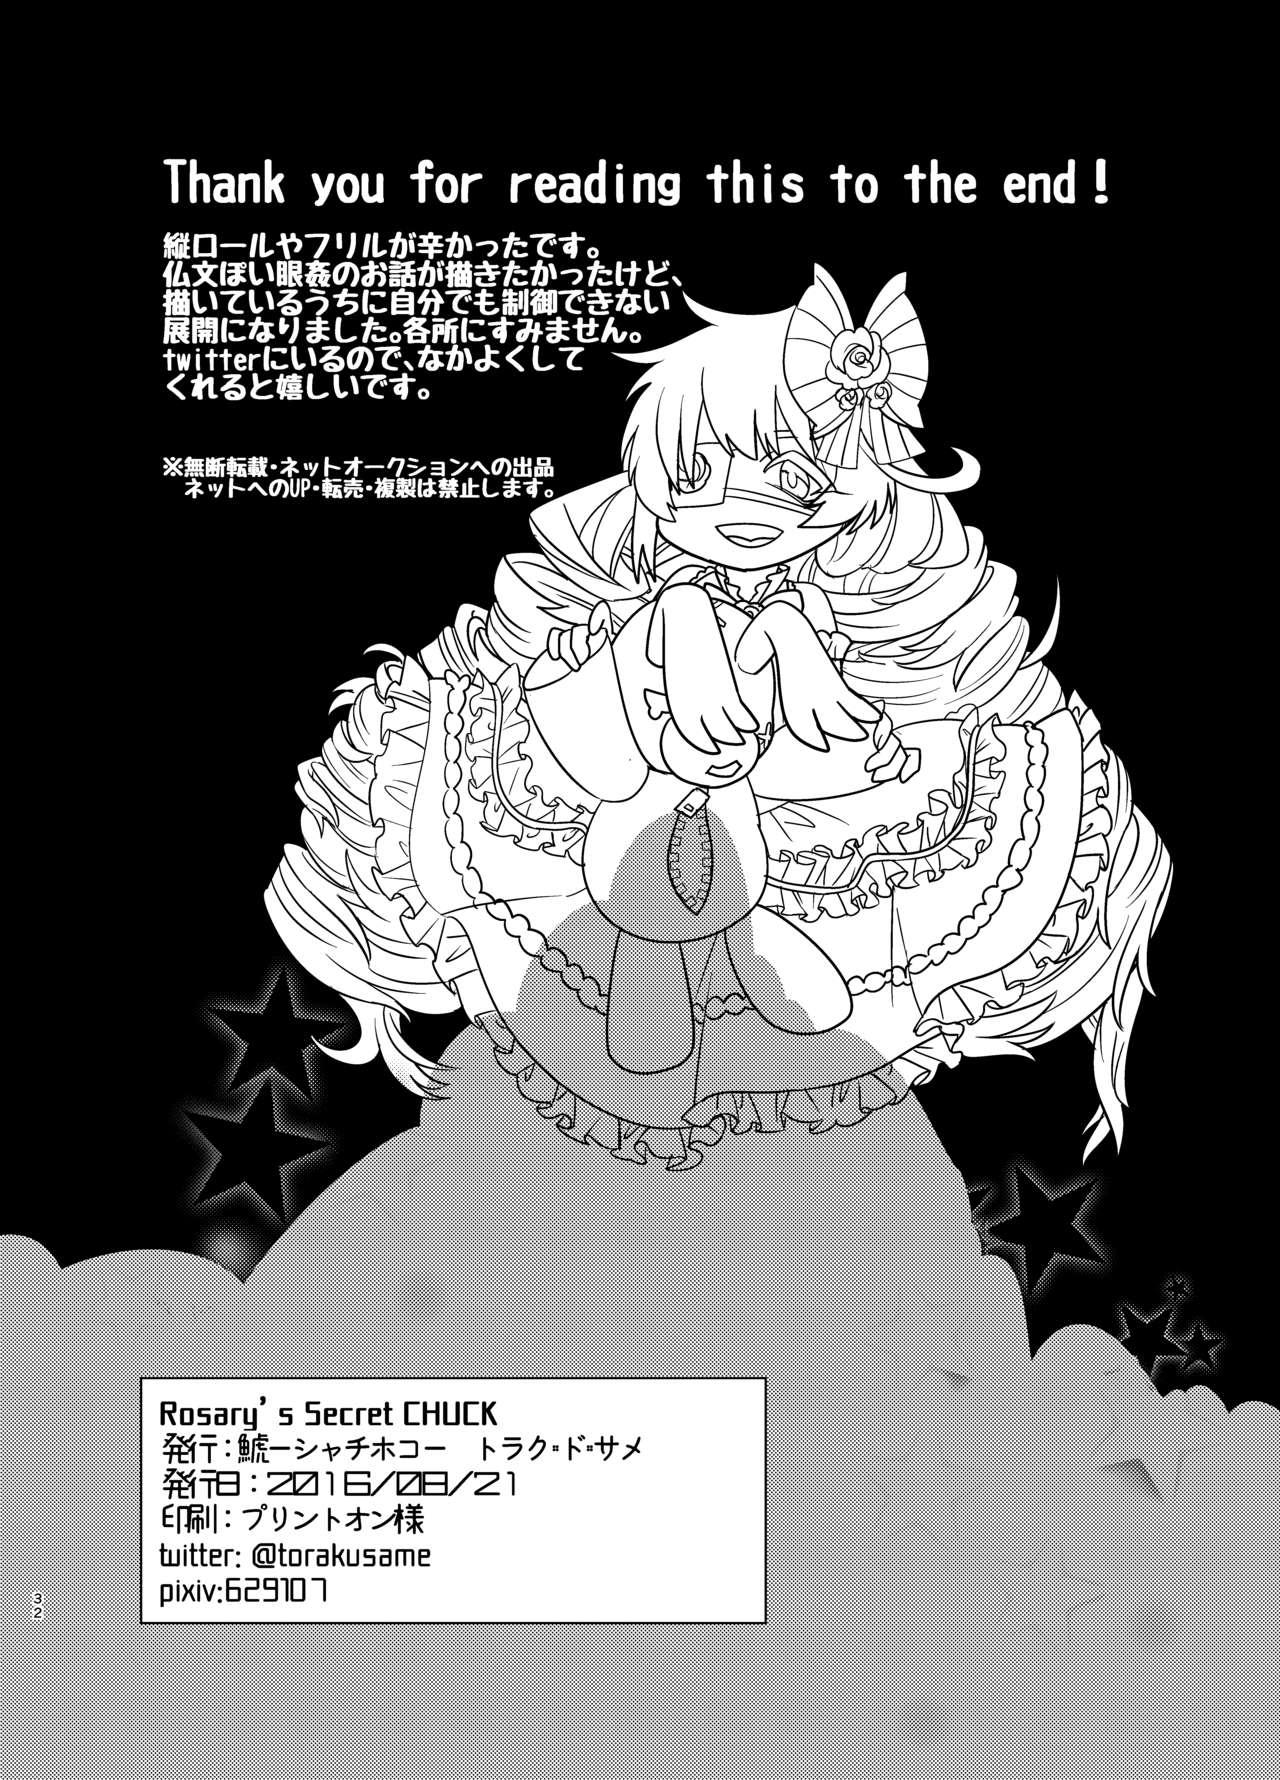 Bisex Rosalie's Secret CHUCK - Shironeko project The - Page 31